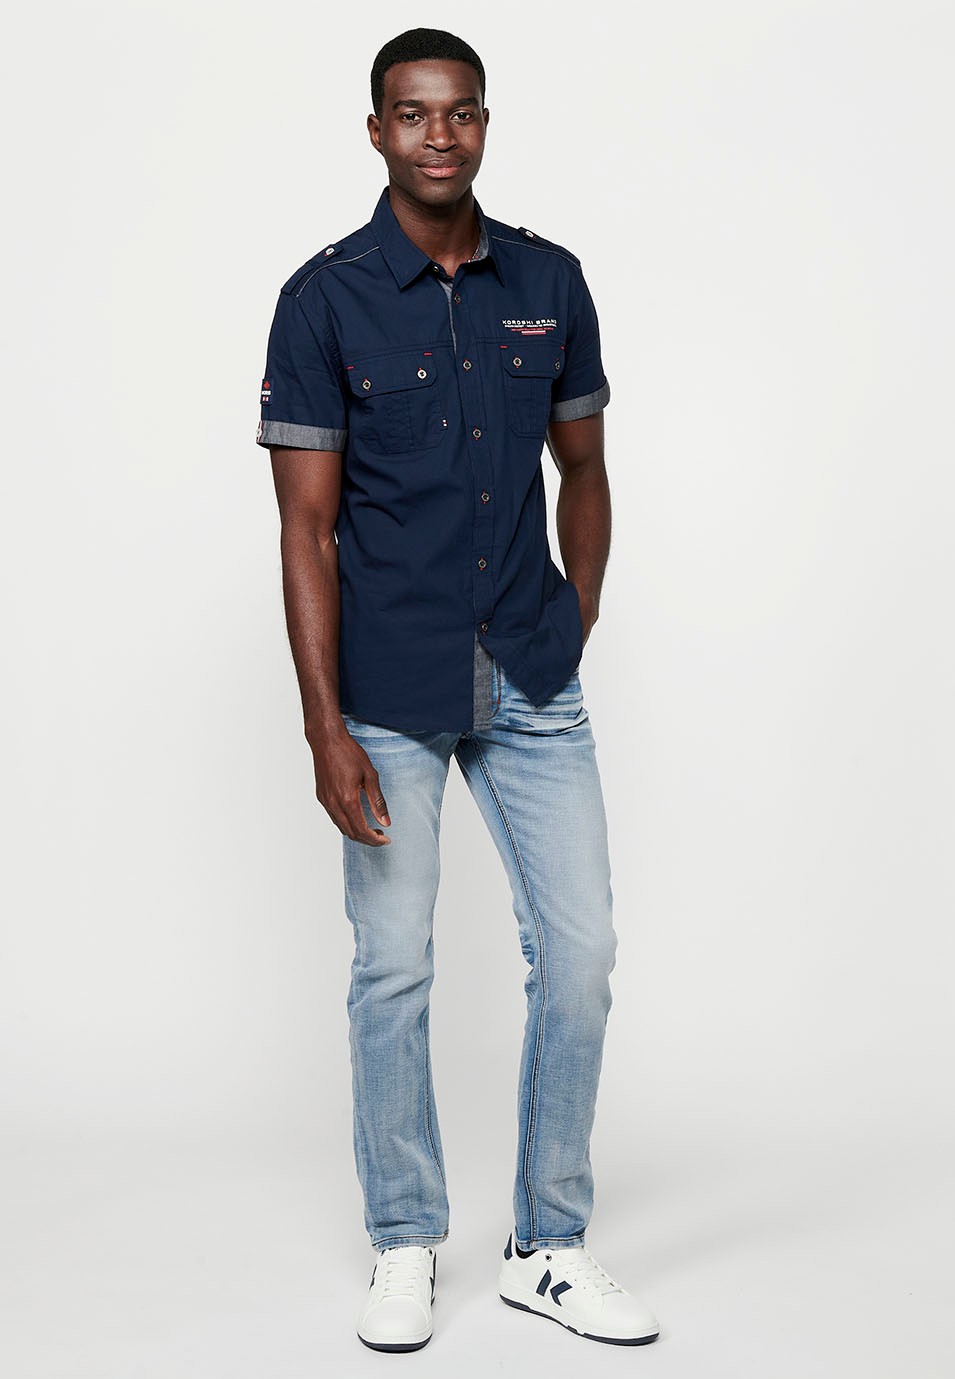 Cotton shirt, short sleeve, shoulder details, navy color for men 3